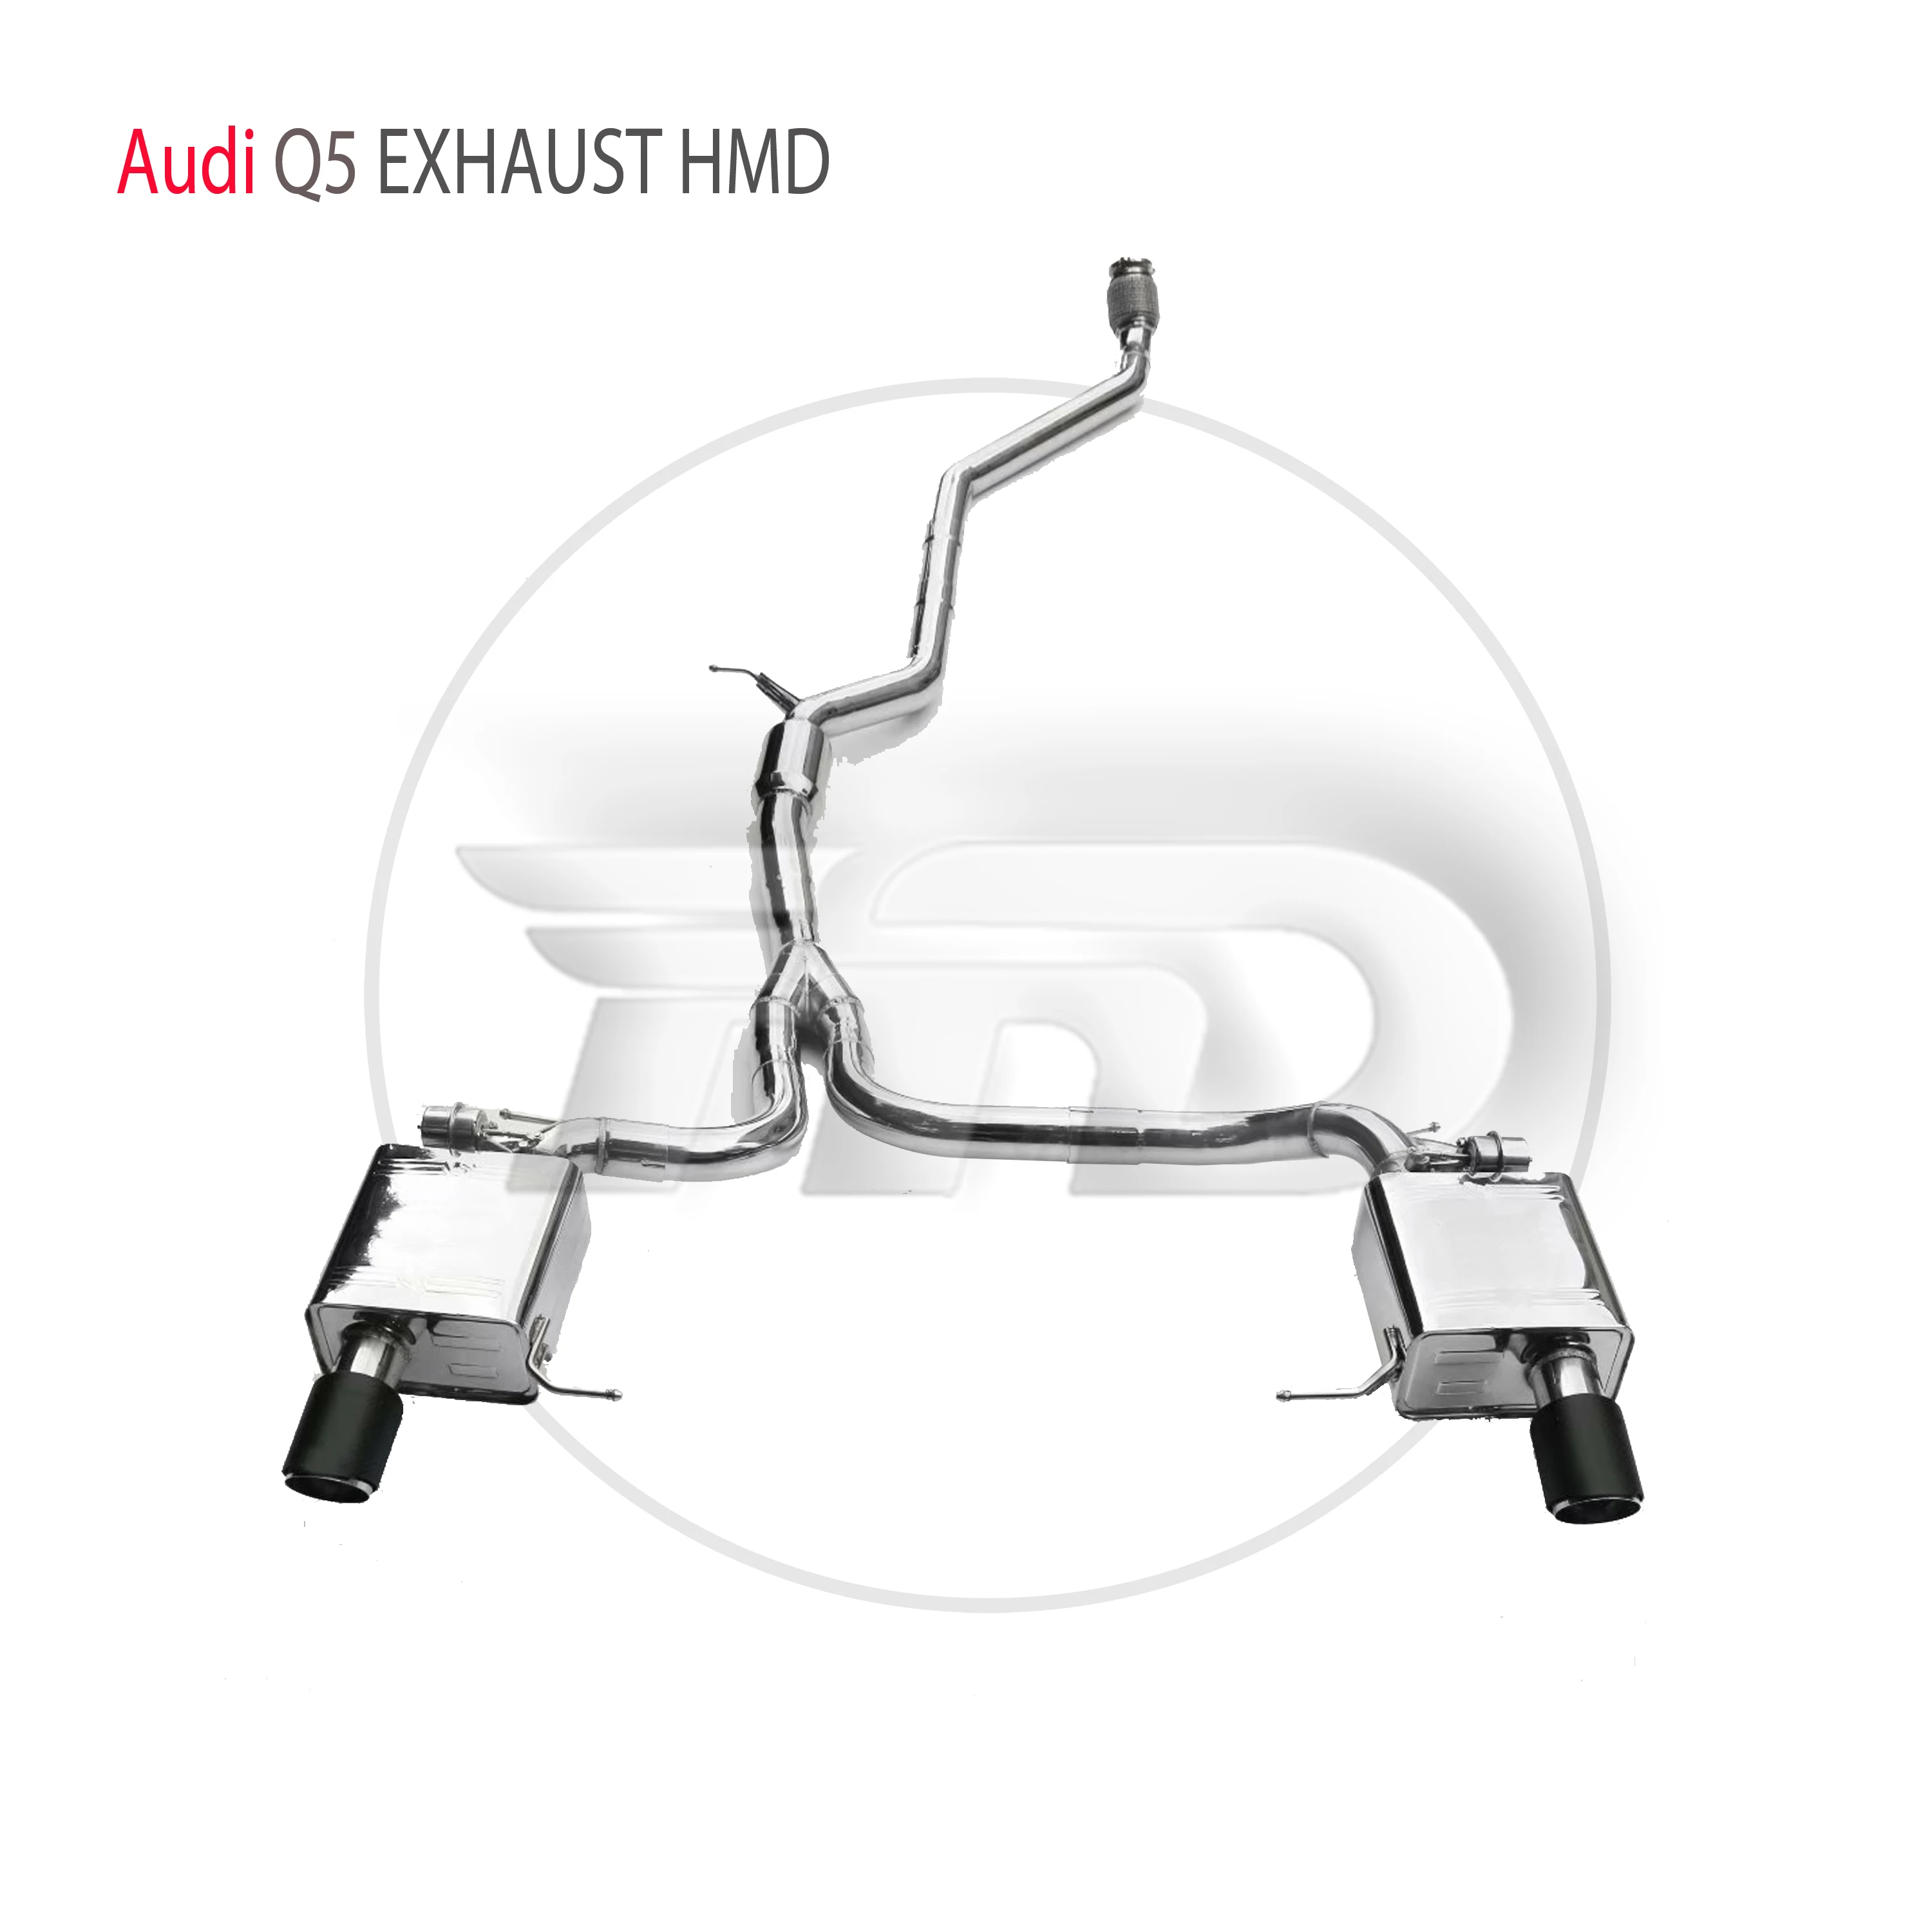 

Производительность выхлопной системы из нержавеющей стали HMD Catback Подходит для Audi Q5 автоматическая модификация электронной модели